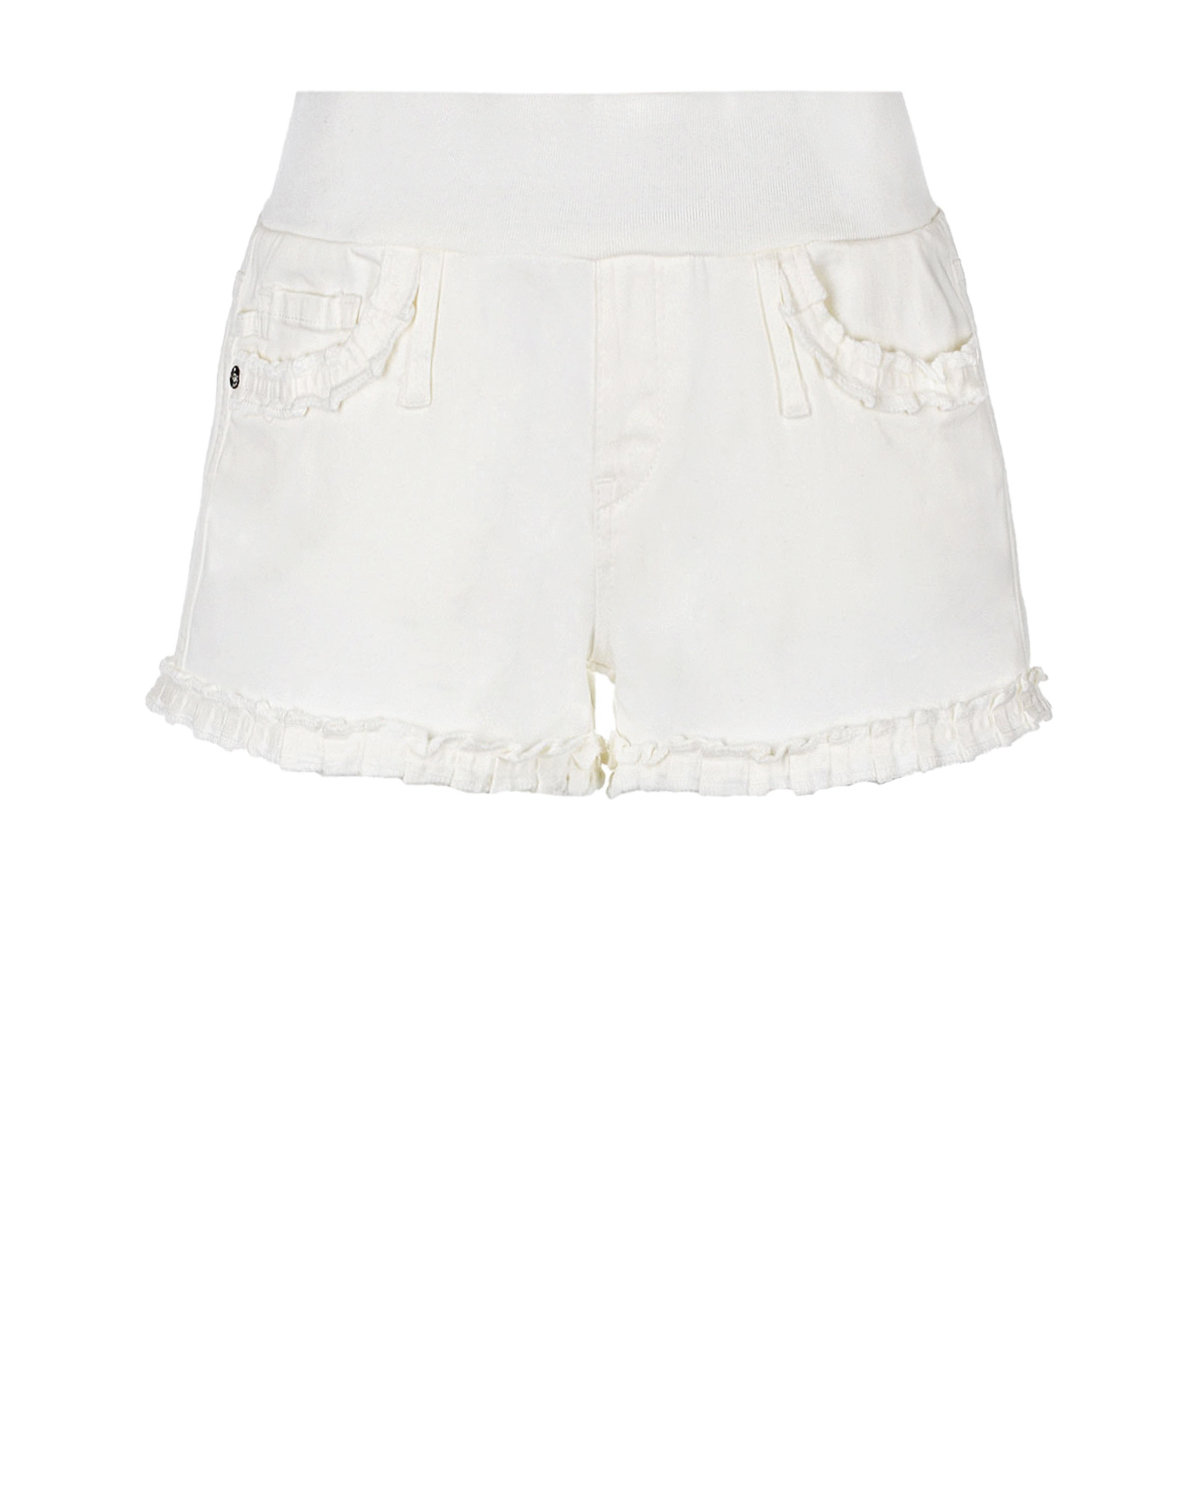 Белые шорты для беременных Bonnie с оборками Pietro Brunelli, размер 38, цвет белый - фото 1